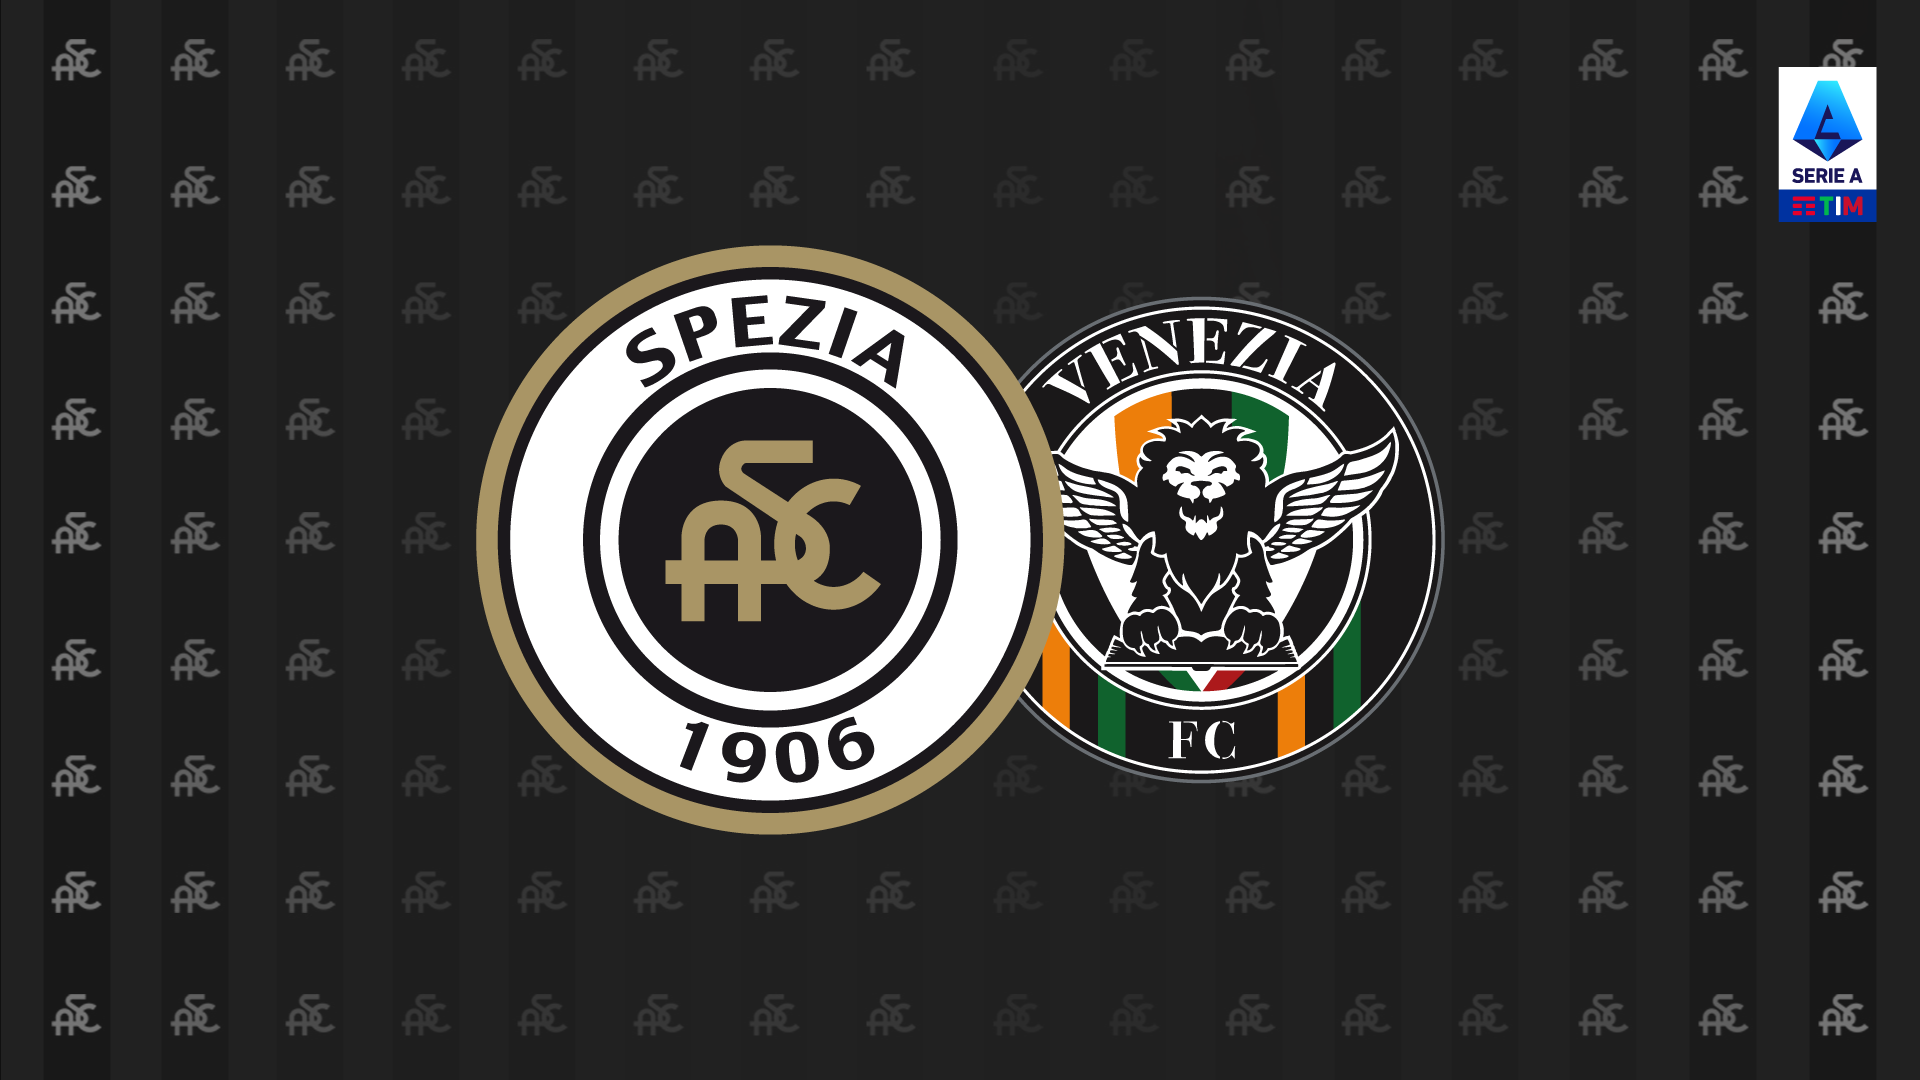 Serie A TIM 21/22: Spezia-Venezia 1-0